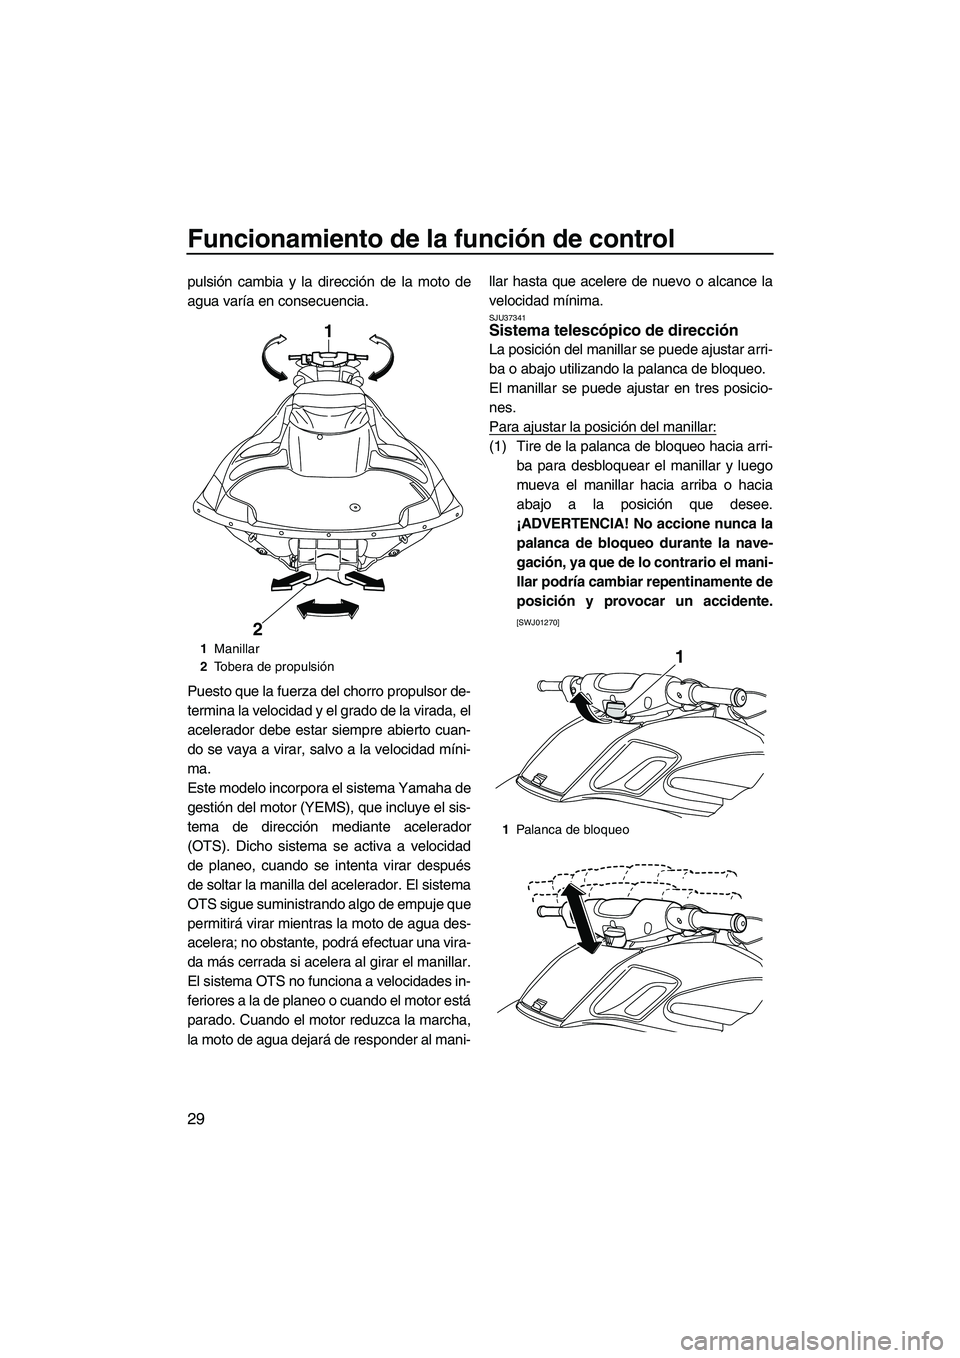 YAMAHA FZR 2013  Manuale de Empleo (in Spanish) Funcionamiento de la función de control
29
pulsión cambia y la dirección de la moto de
agua varía en consecuencia.
Puesto que la fuerza del chorro propulsor de-
termina la velocidad y el grado de 